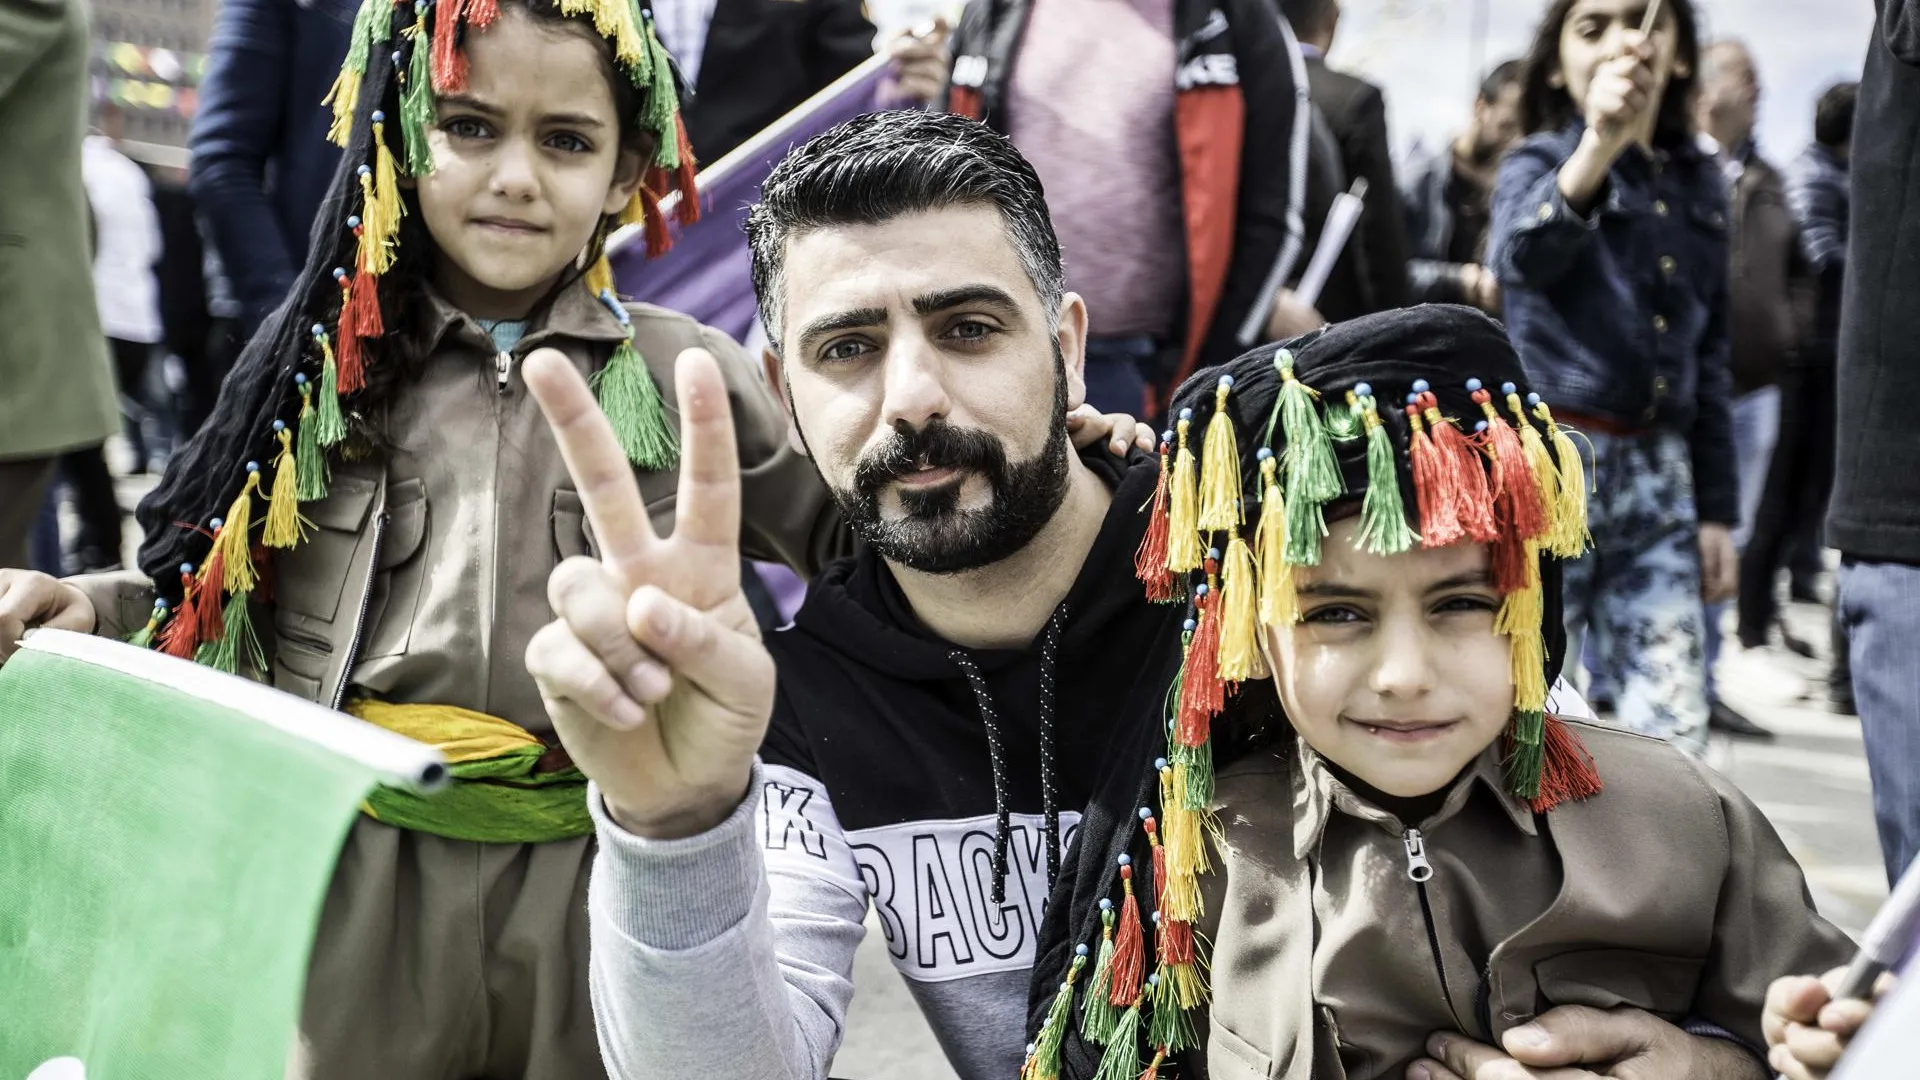 Мужчина с детьми во время курдского праздника Навруз в Турции. Фото: Emrah Oprukcu / ZUMAPRESS.com